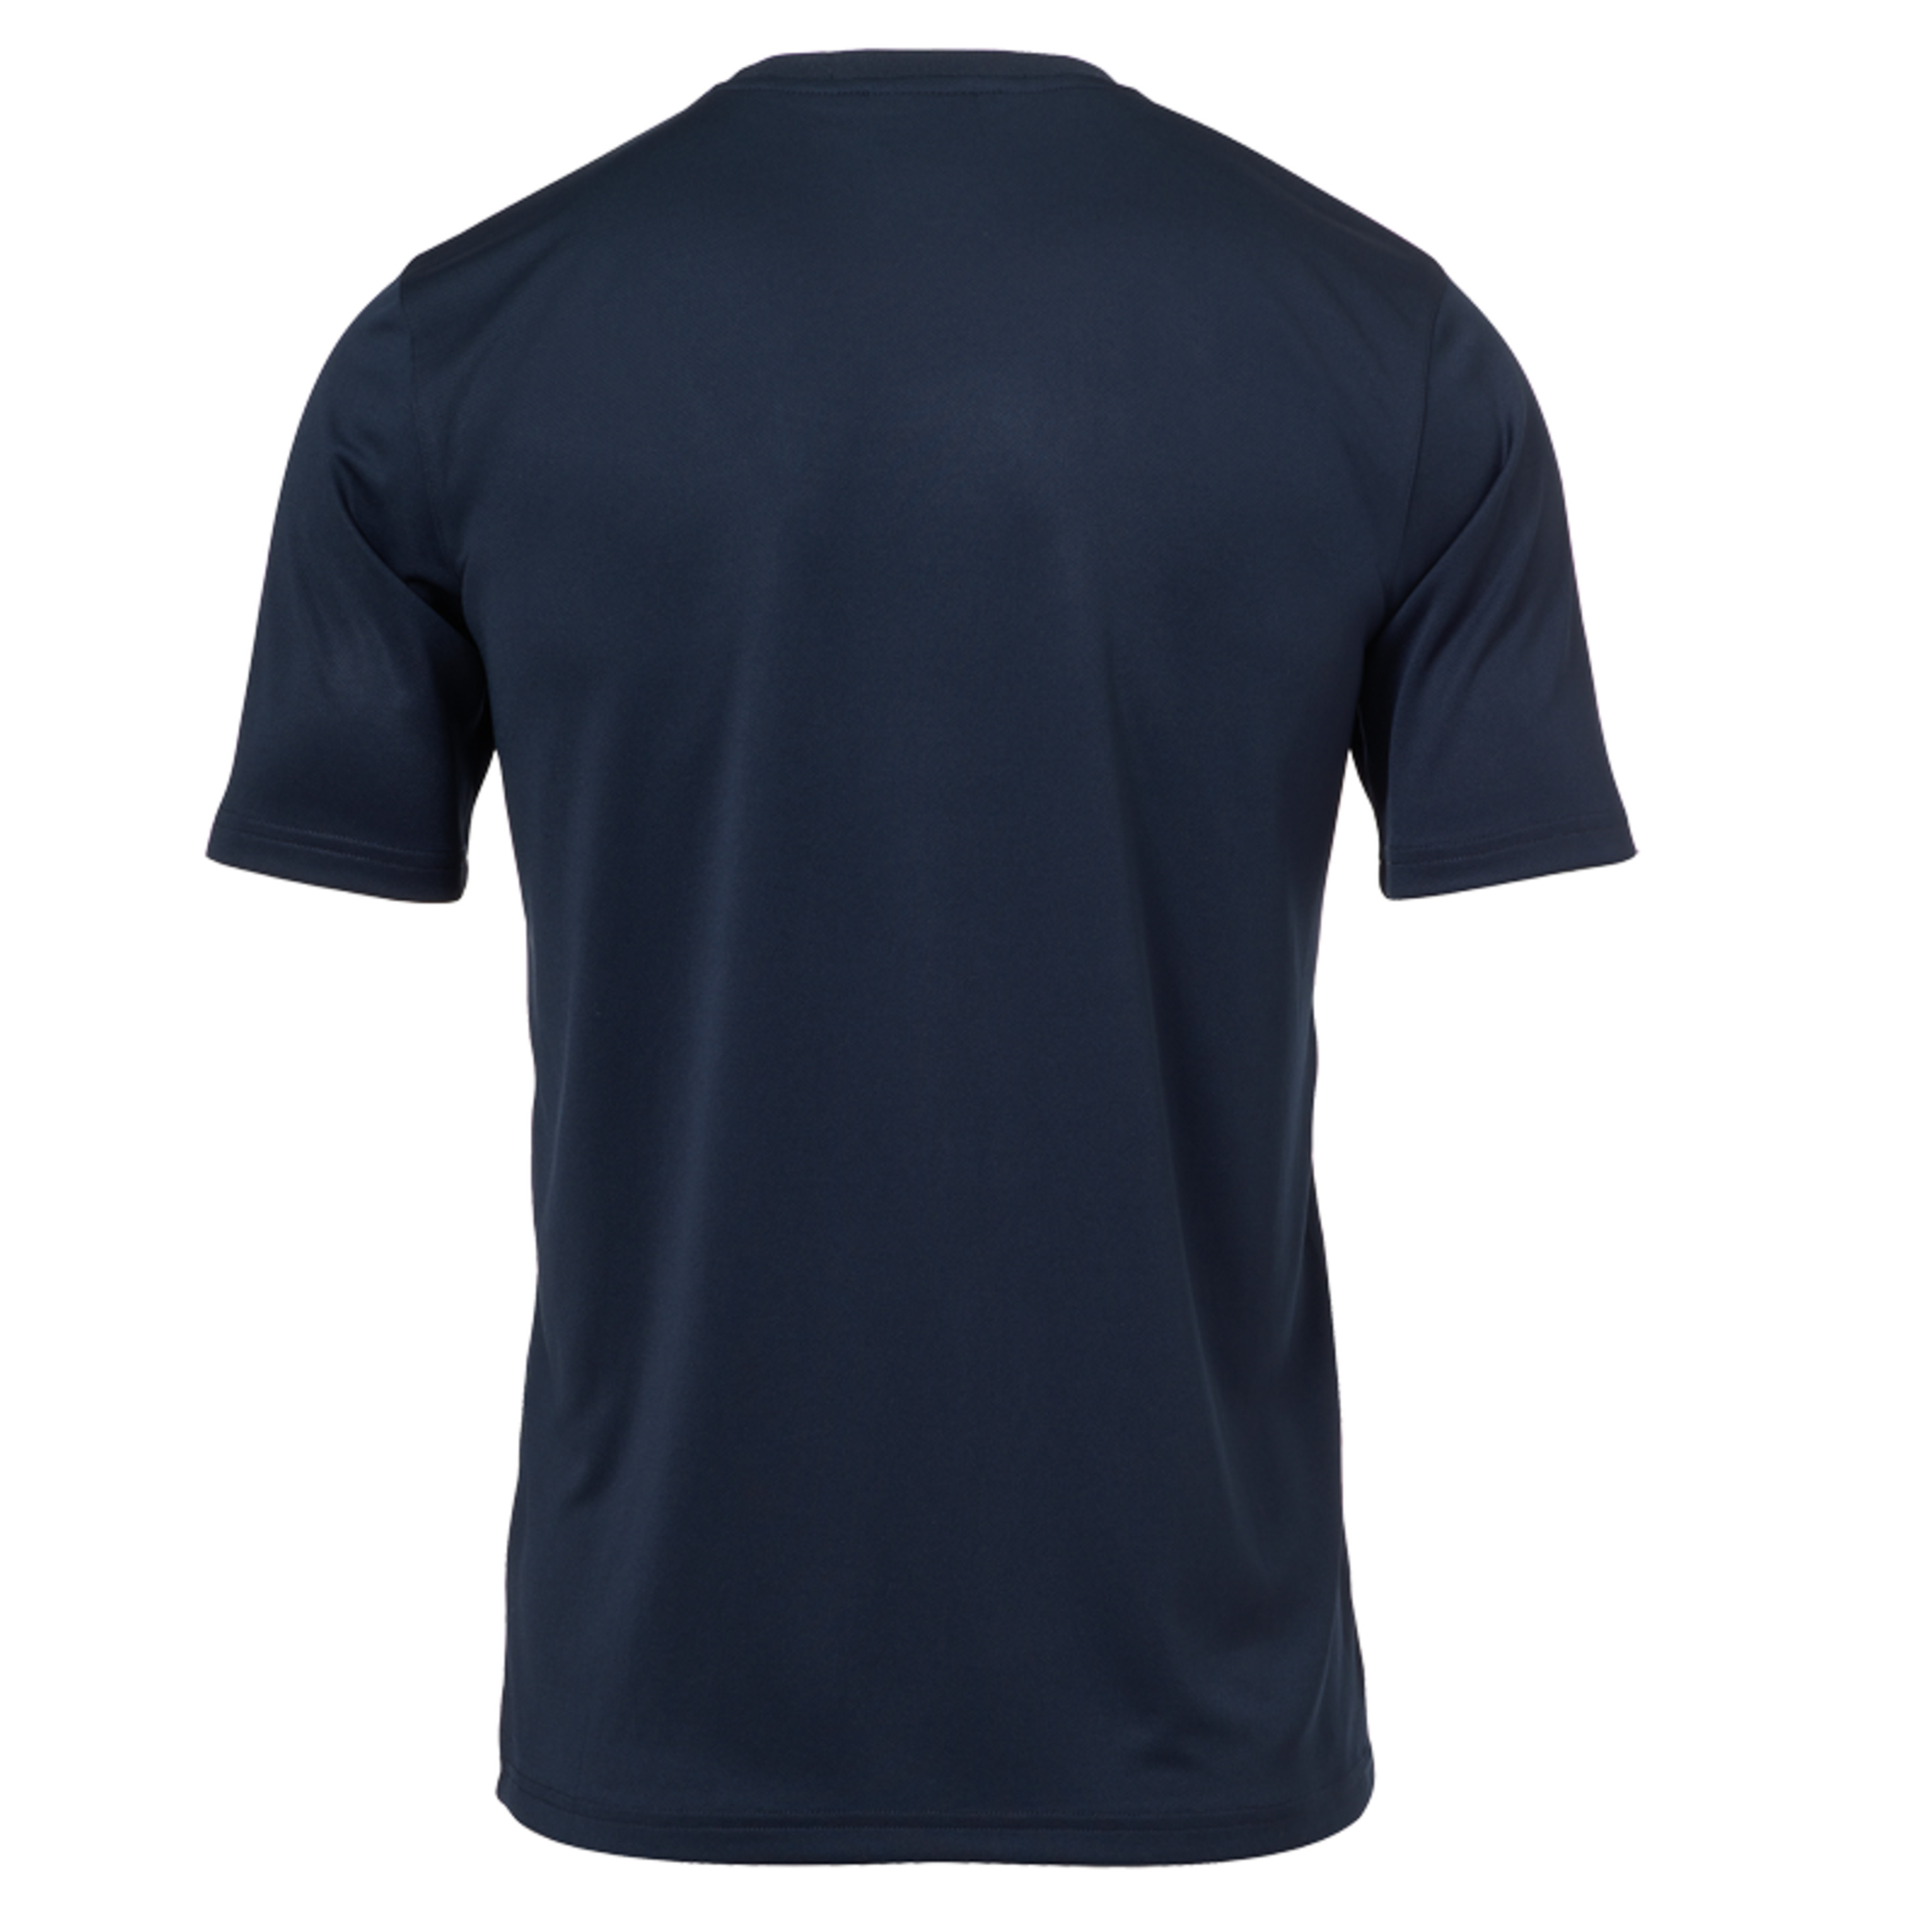 Score Training T-shirt Azul Marino/amarillo Fluo Uhlsport